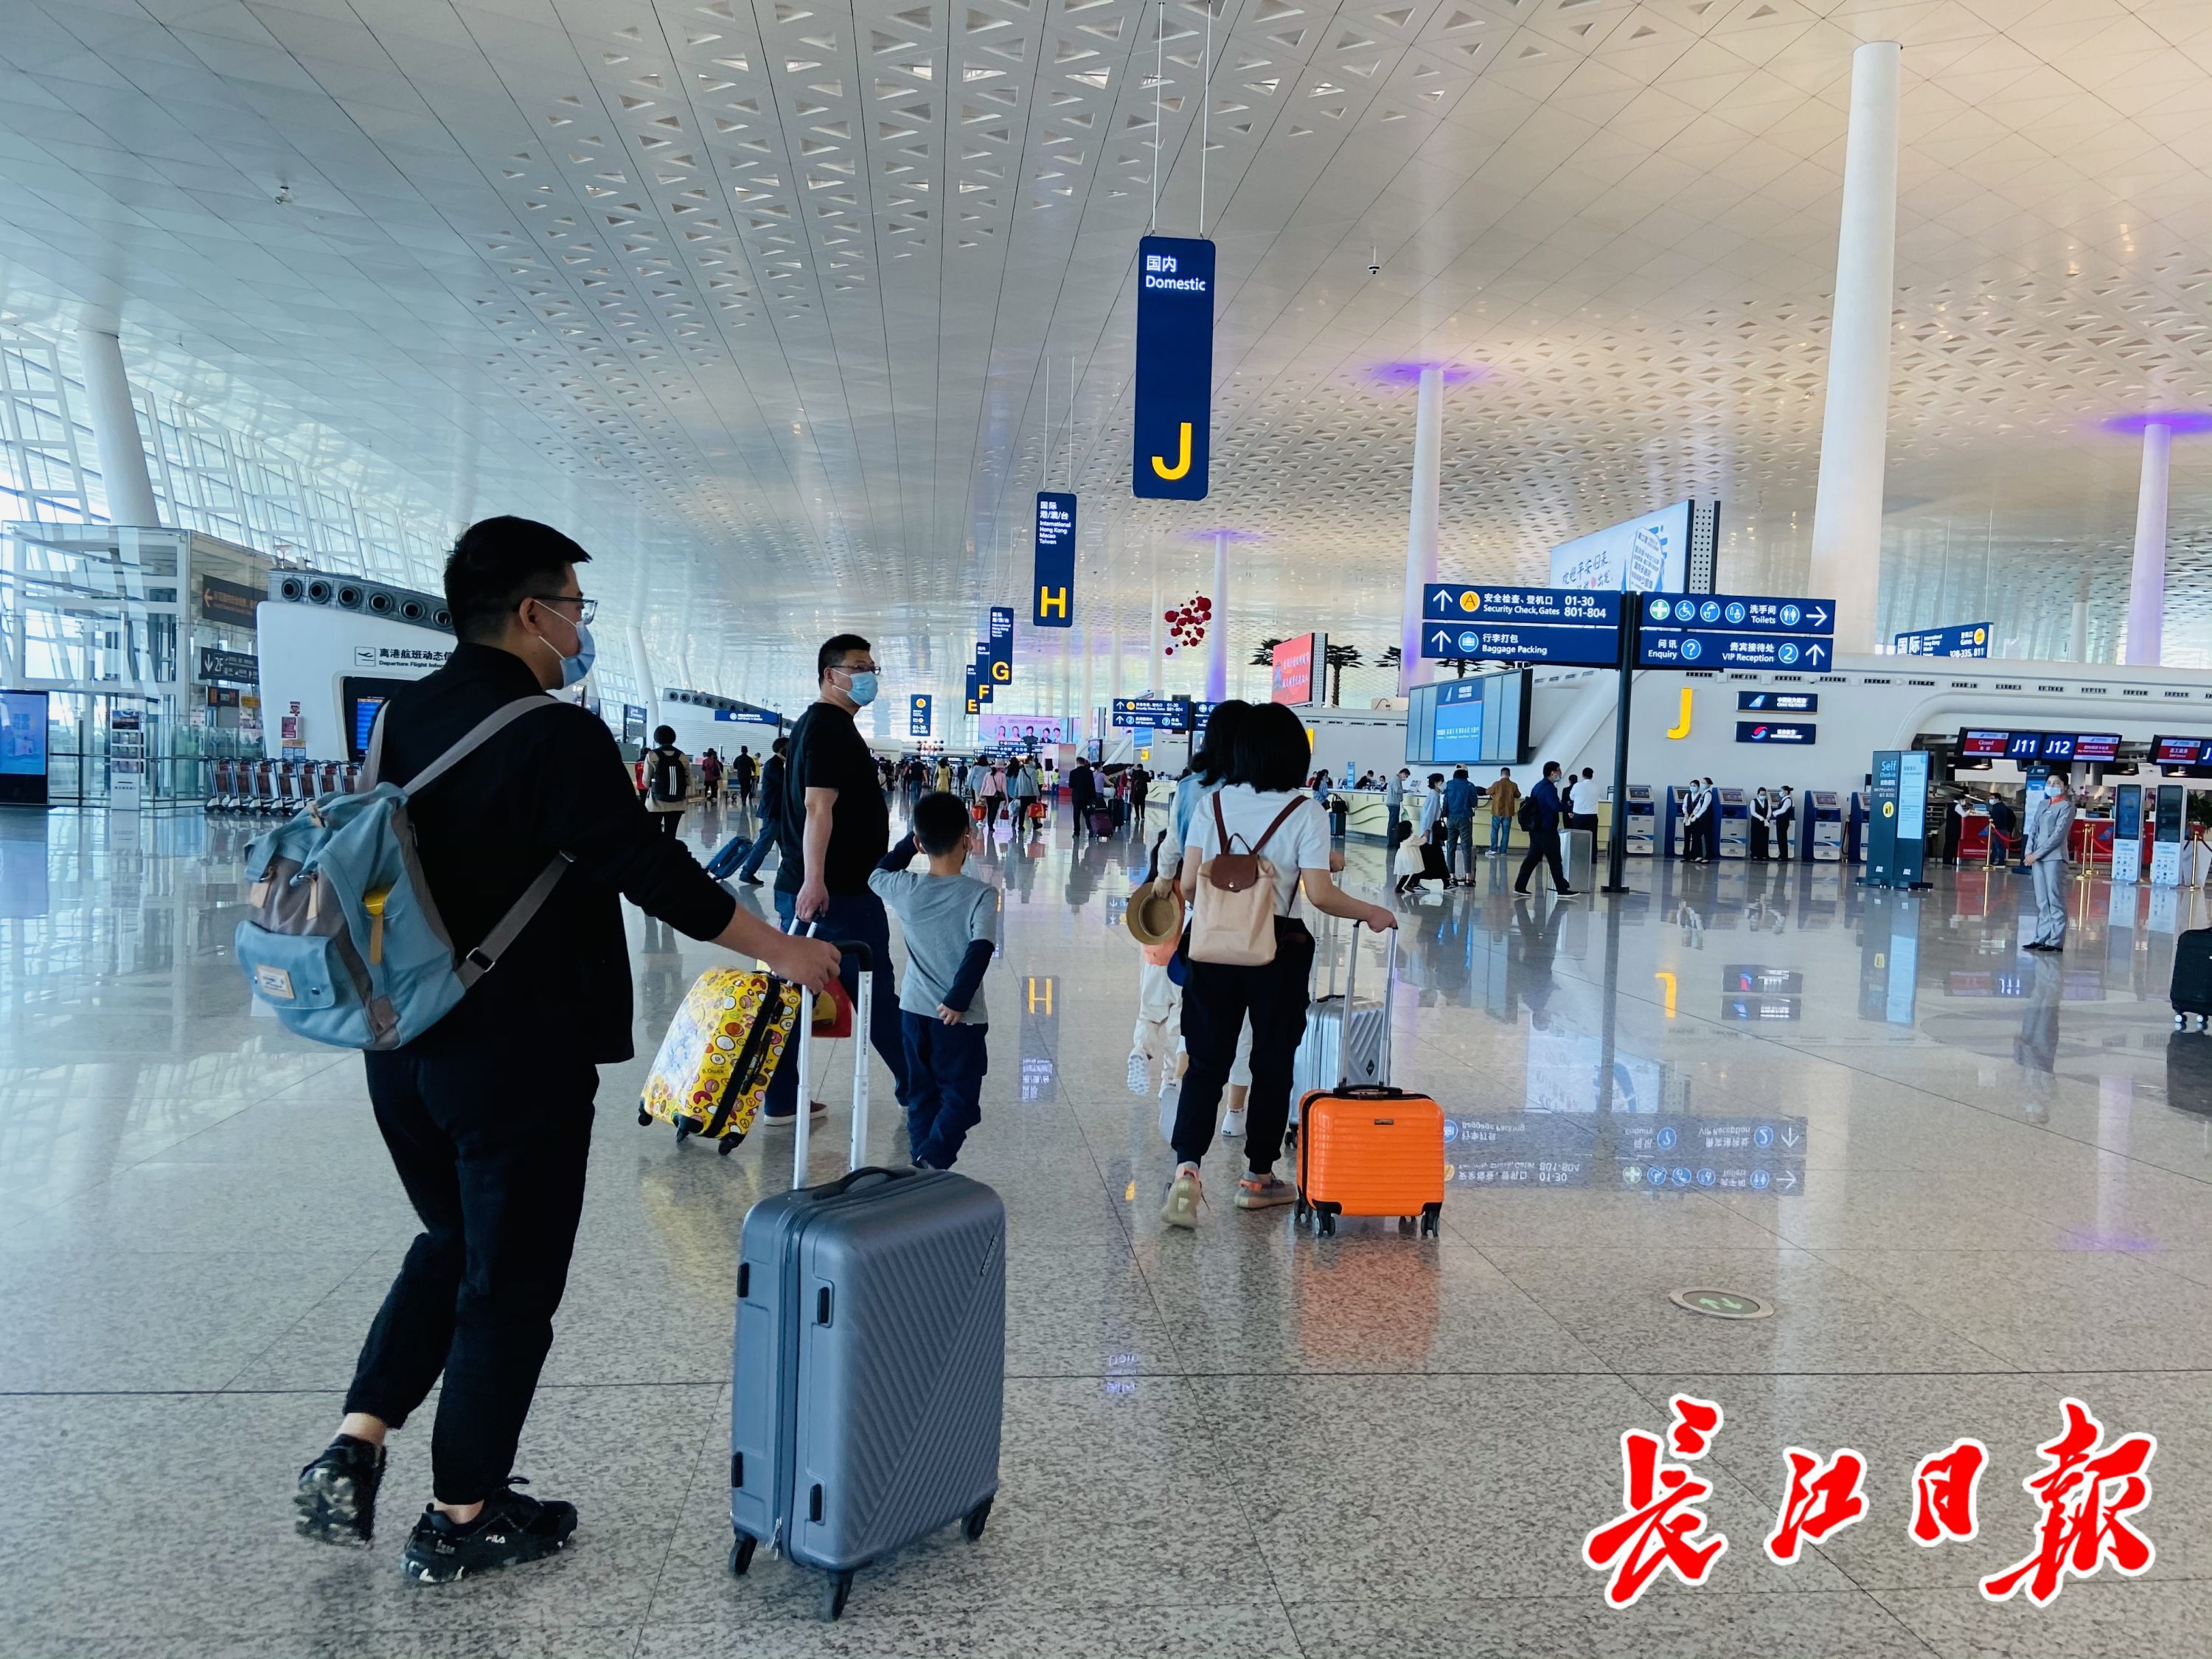 7万人次!武汉天河机场国内客流量创历史新高